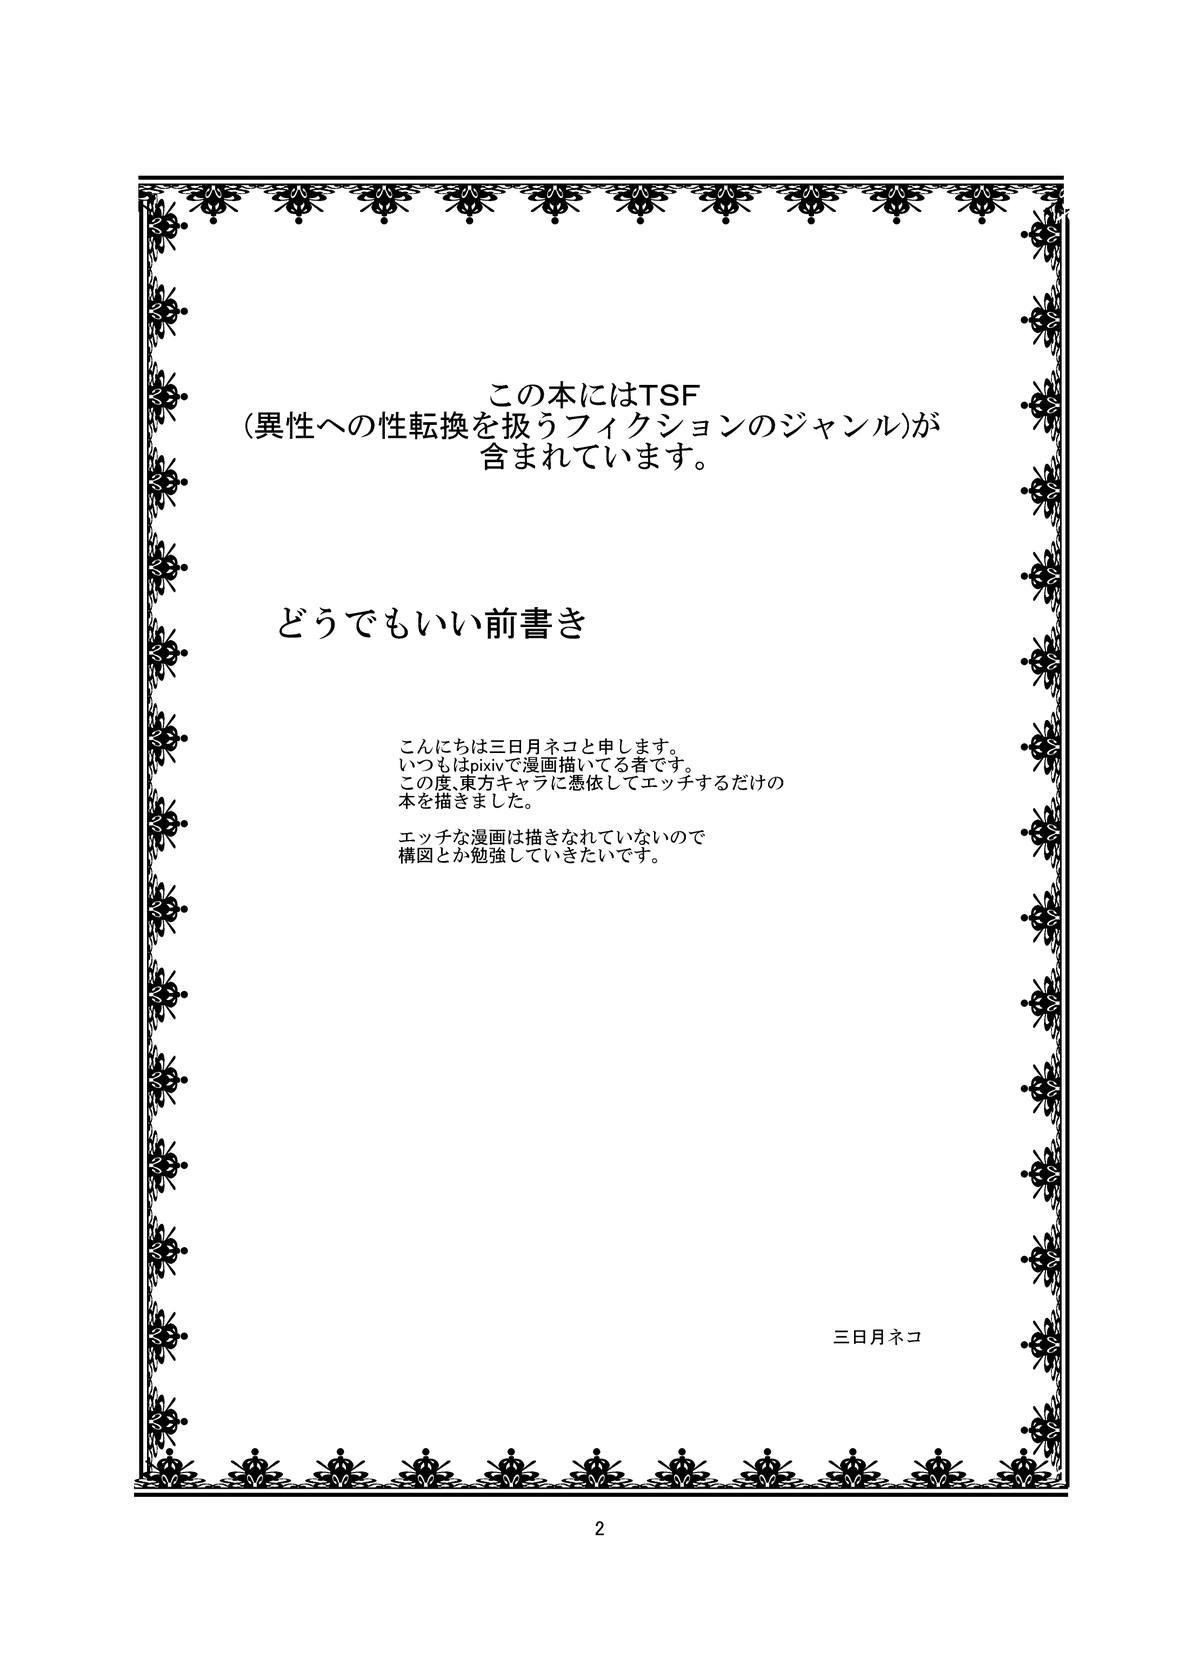 All Touhou TS monogatari - Touhou project Chichona - Page 2